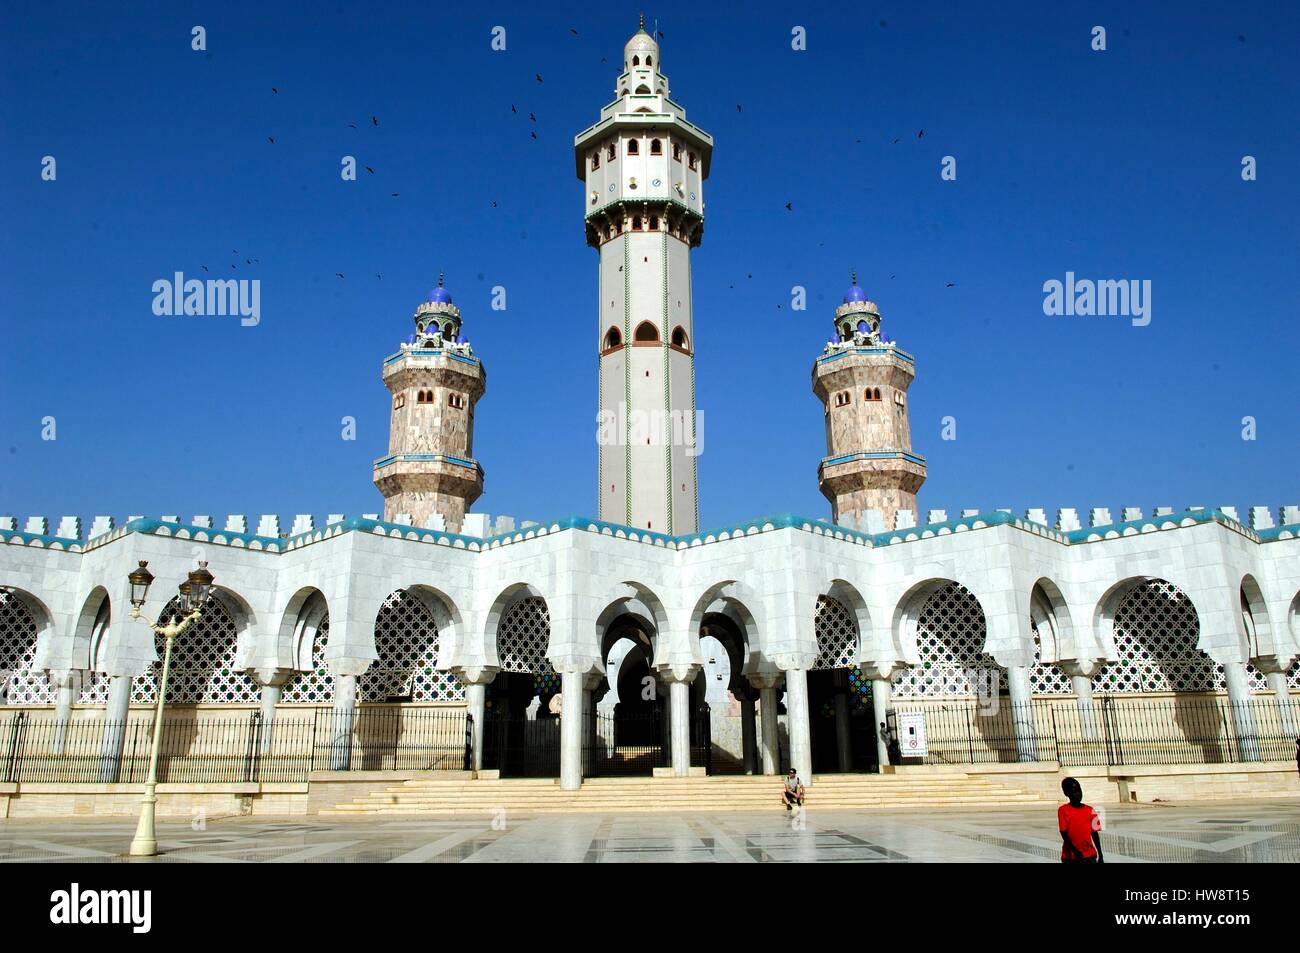 Région de Diourbel, Sénégal, Touba, mosquée Mouride (la plus grande mosquée de l'Afrique de l'ouest, célèbre pour le Magal, un grand pèlerinage annuel Mouride collecte les Musulmans) Banque D'Images